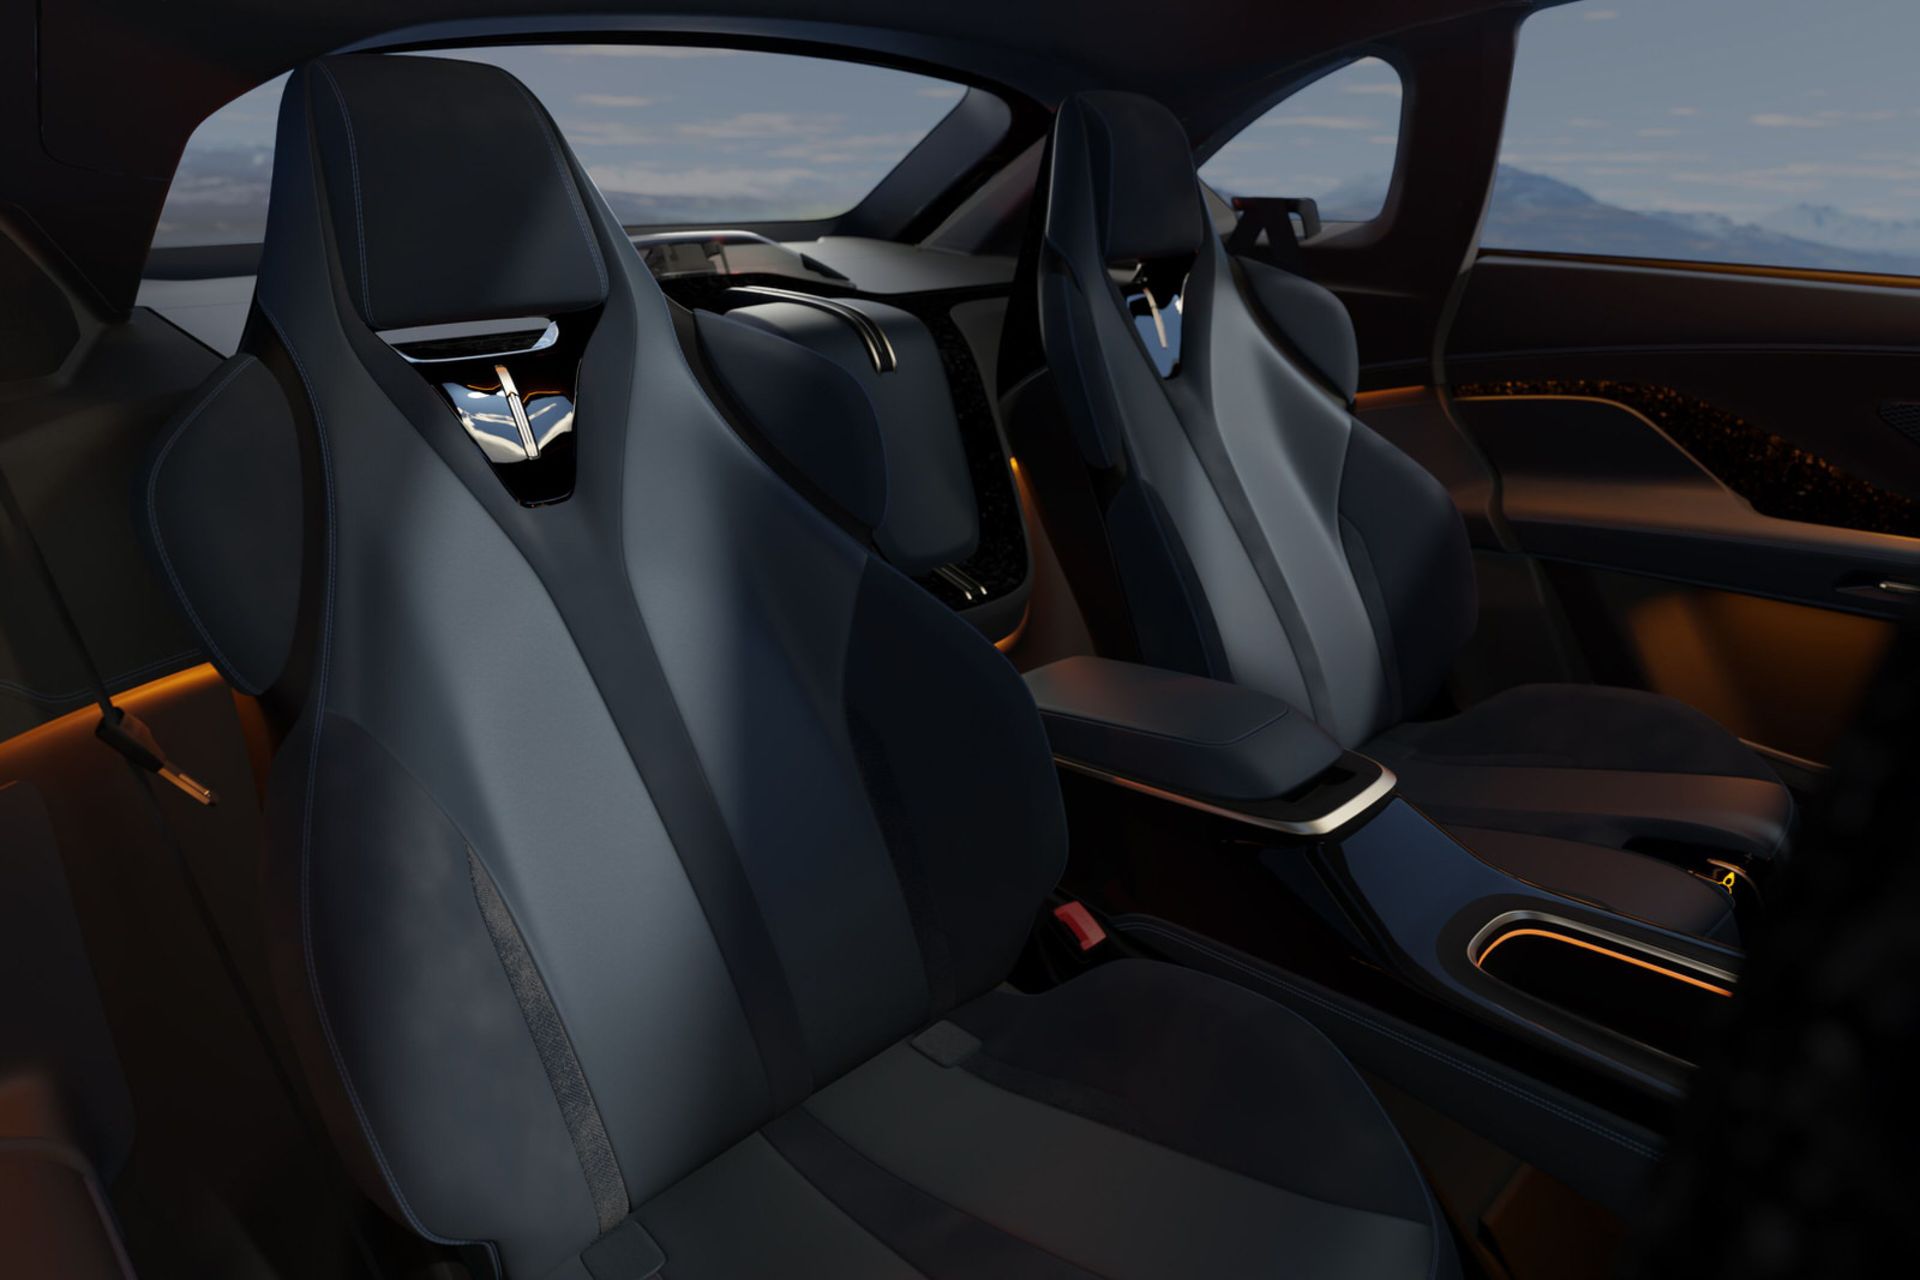 صندلی های عقب خودروی الکتریکی Mullen 5 RS با طراحی اسپرت و کنسول میانی